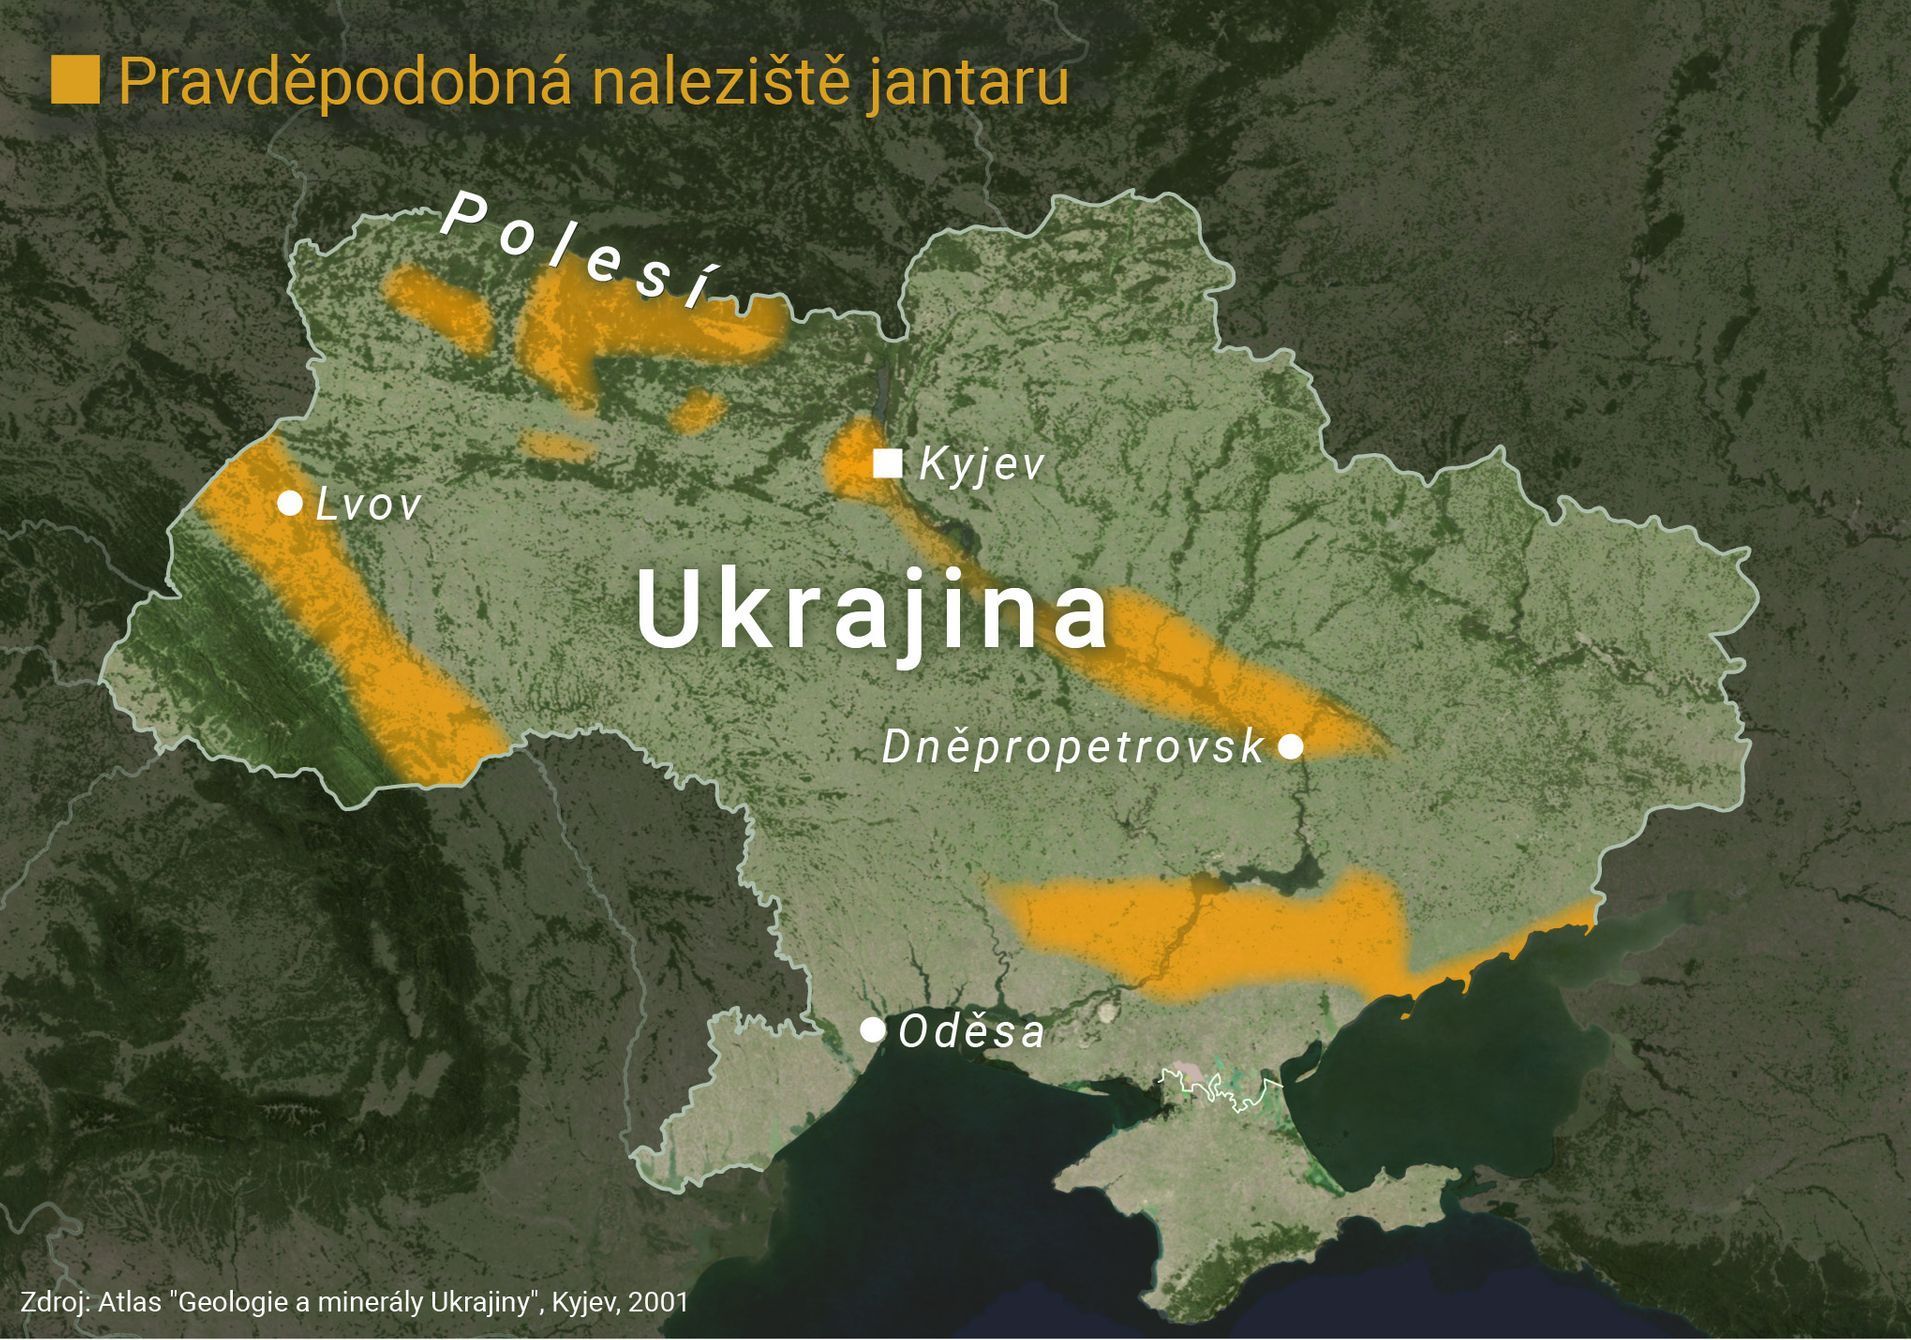 Naleziště jantaru na Ukrajině